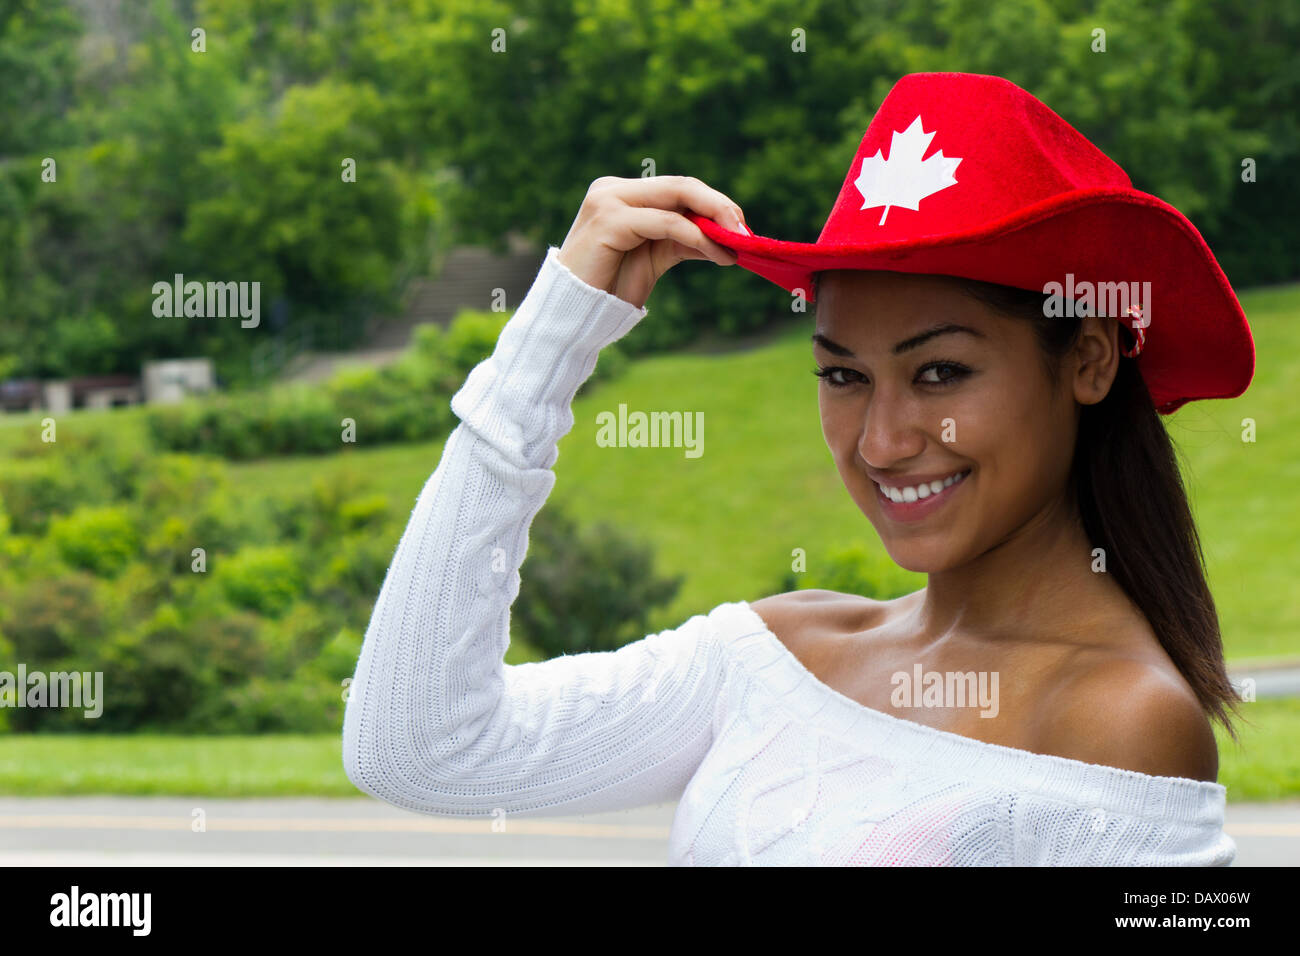 Jolie jeune canadienne dans une red hat Banque D'Images